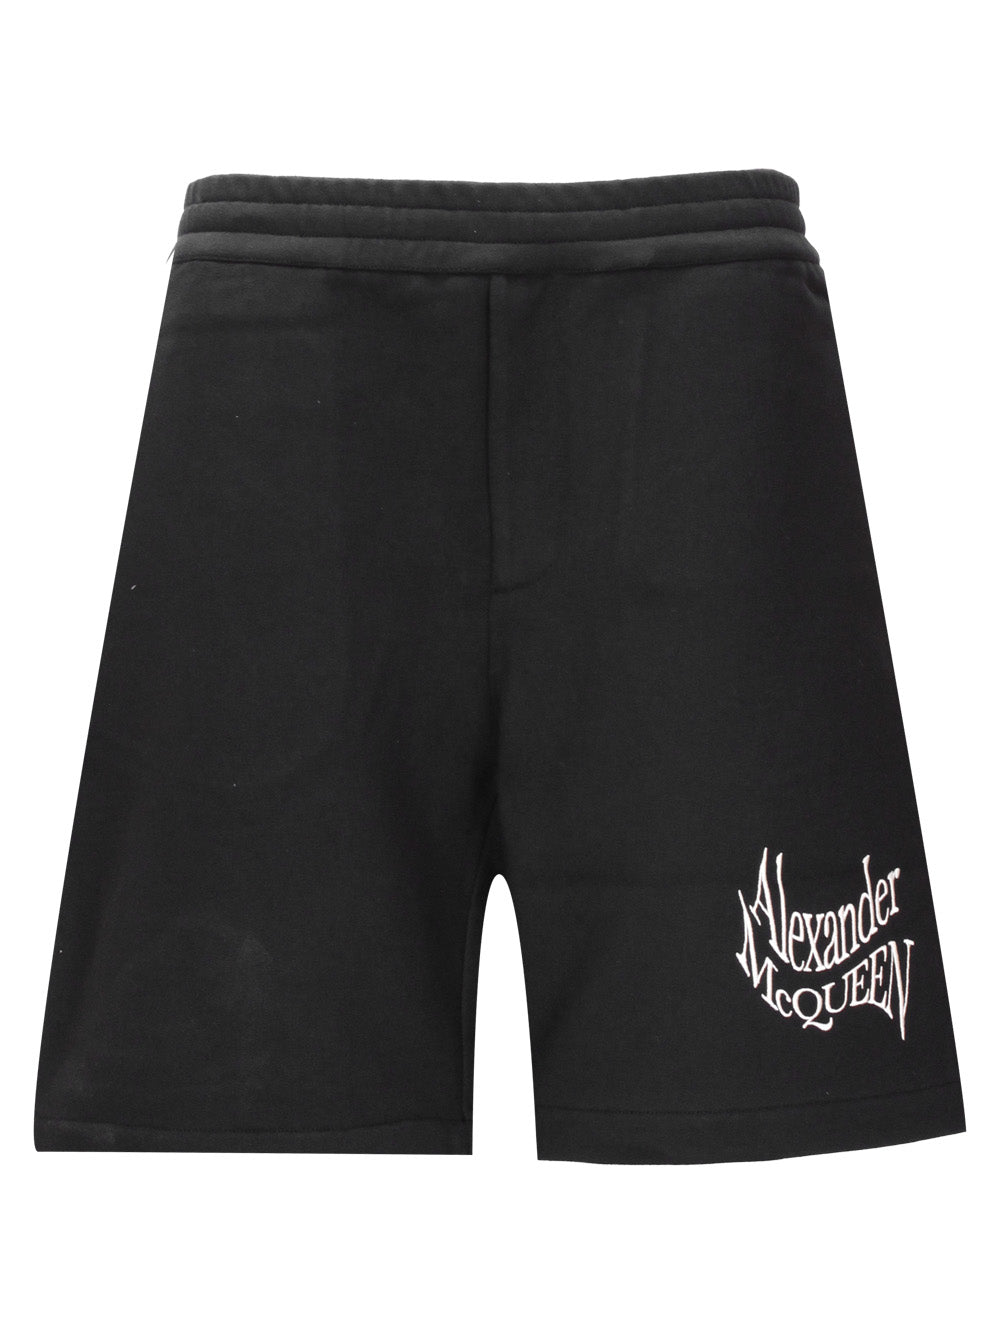 Alexander McQueen 781880 Man Black Shorts - Zuklat